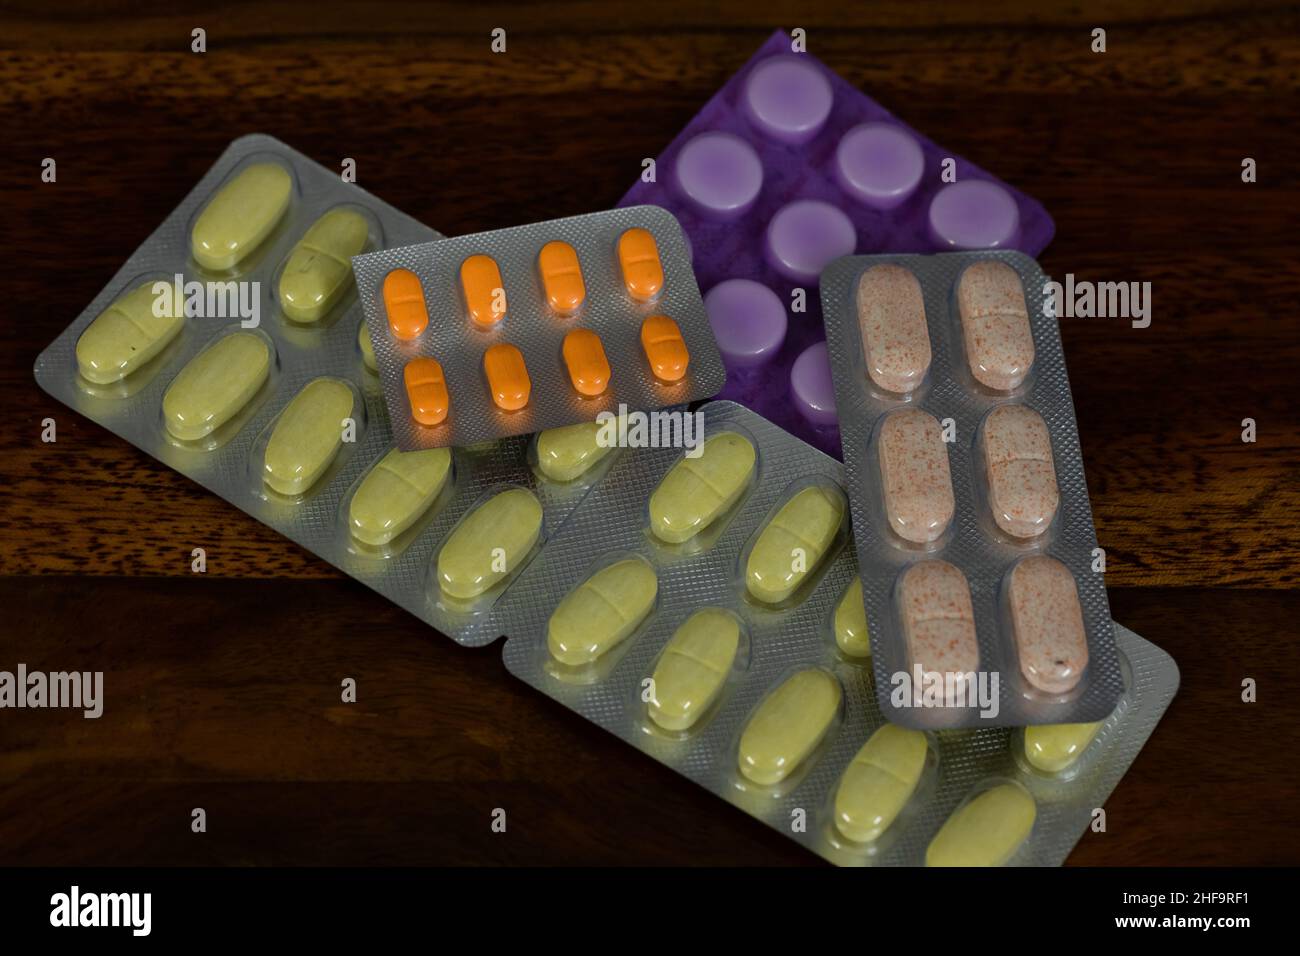 Nahaufnahme der verschiedenen Typen und Farben von allopathischen Medikamenten angezeigt Stockfoto